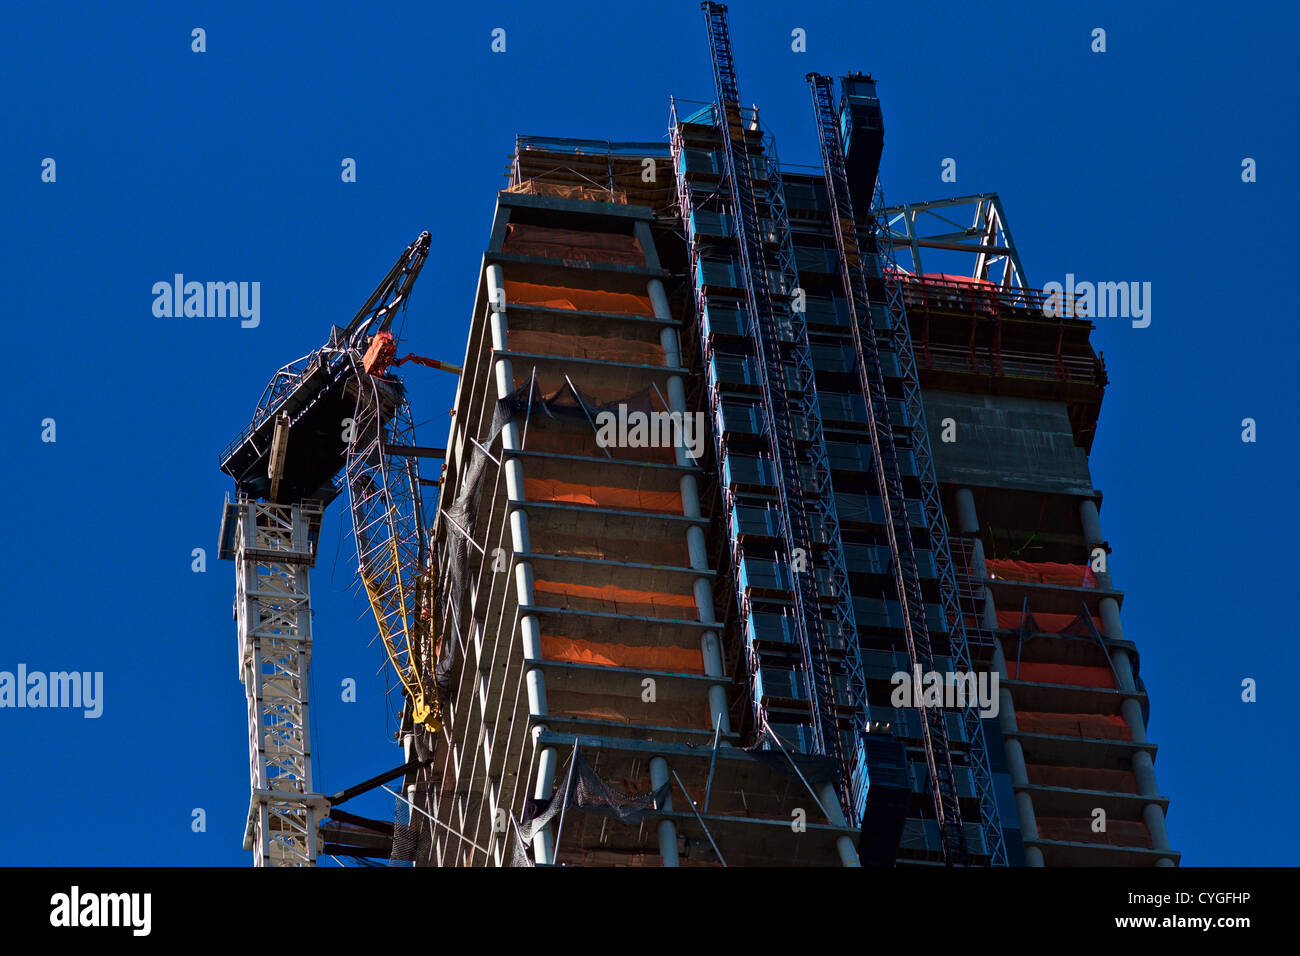 November 4, 2012, New York, NY, USA. Lavoratore di benna è visto accanto a gru da cantiere che è collassata durante l uragano di sabbia. La gru penzolanti è stato fissato al lato dell'edificio. Foto Stock